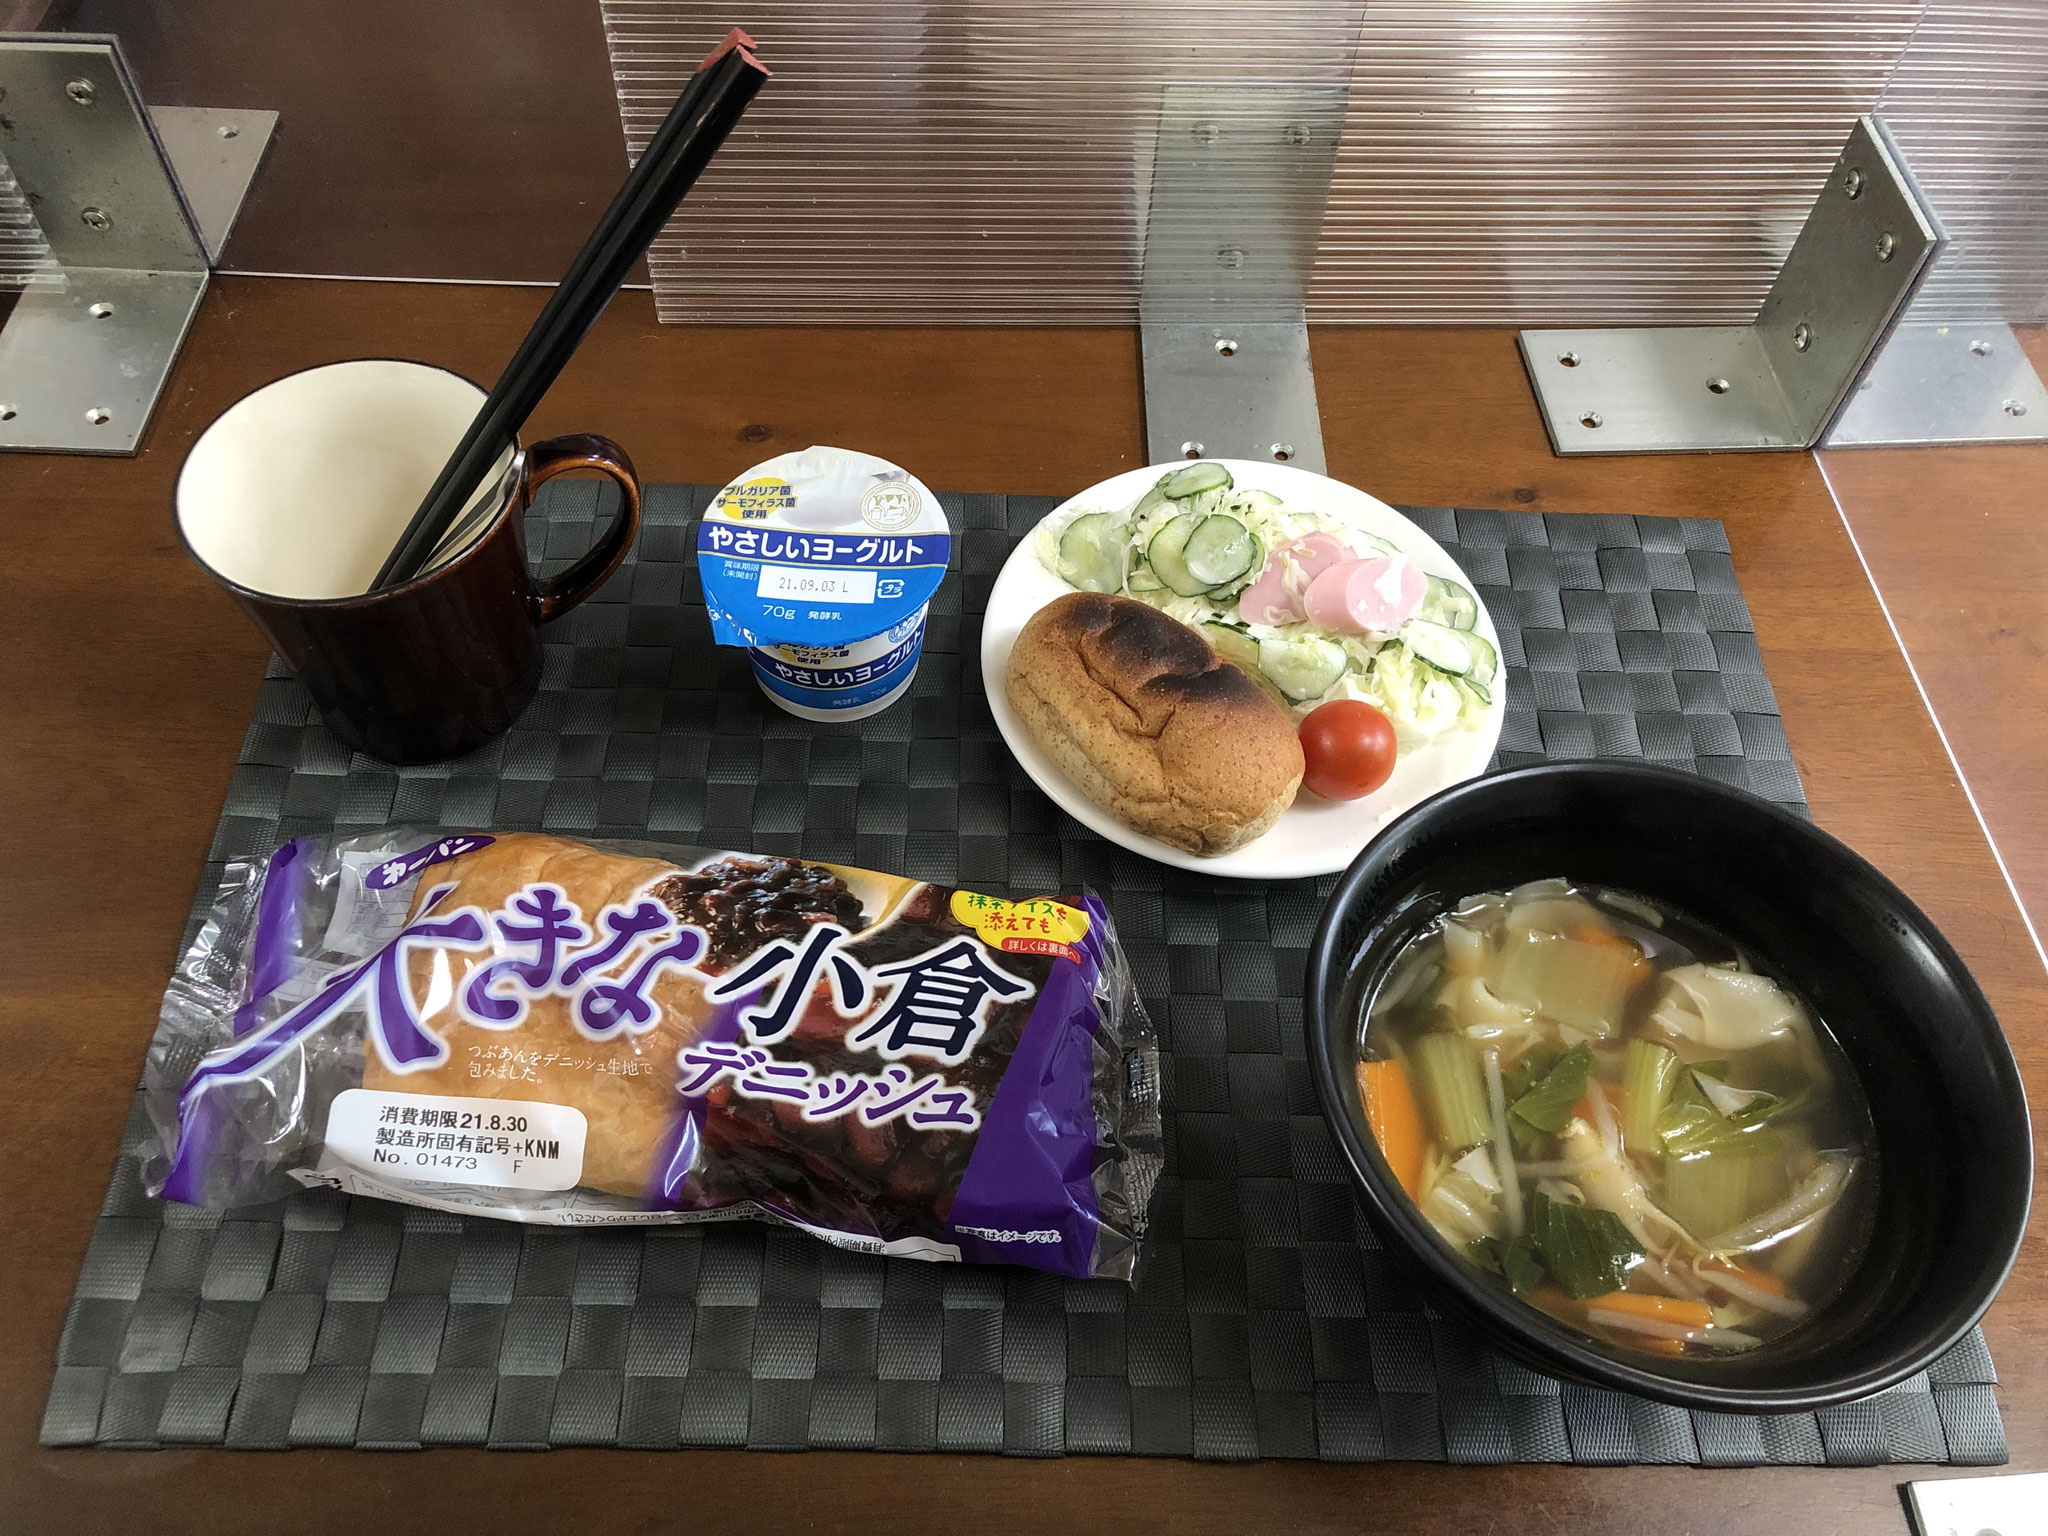 8月29日日曜日、Ohana朝食「野菜たっぷりのワンタンスープ、キャベツときゅうりとソーセージのサラダ、デニッシュパン、ヨーグルト」